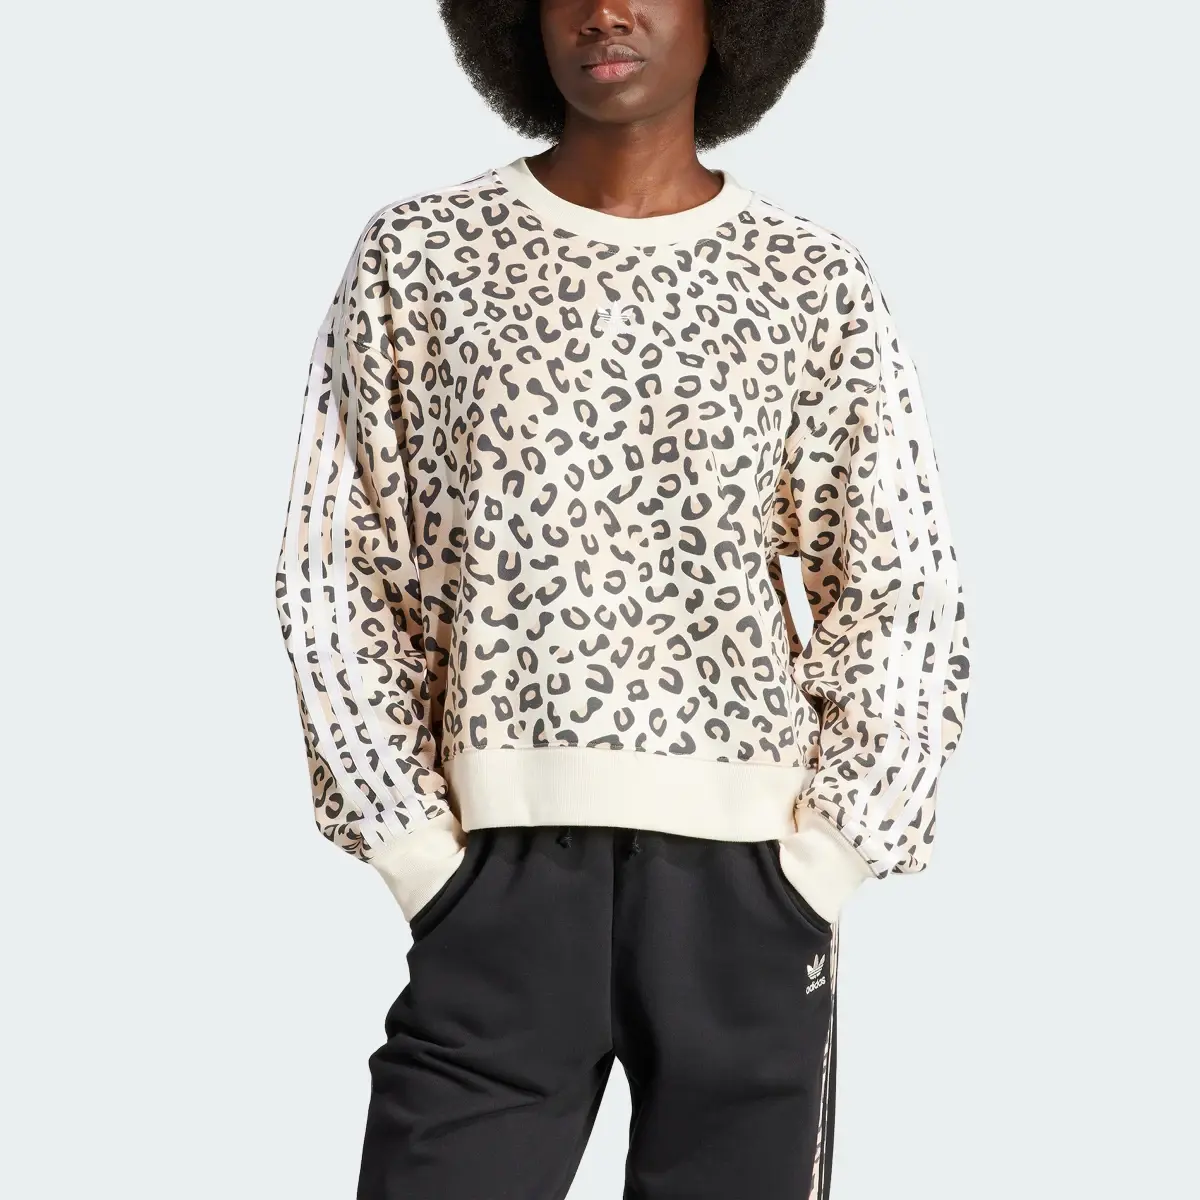 Adidas Originals Leopard Luxe Trefoil Crew Sweatshirt. 1